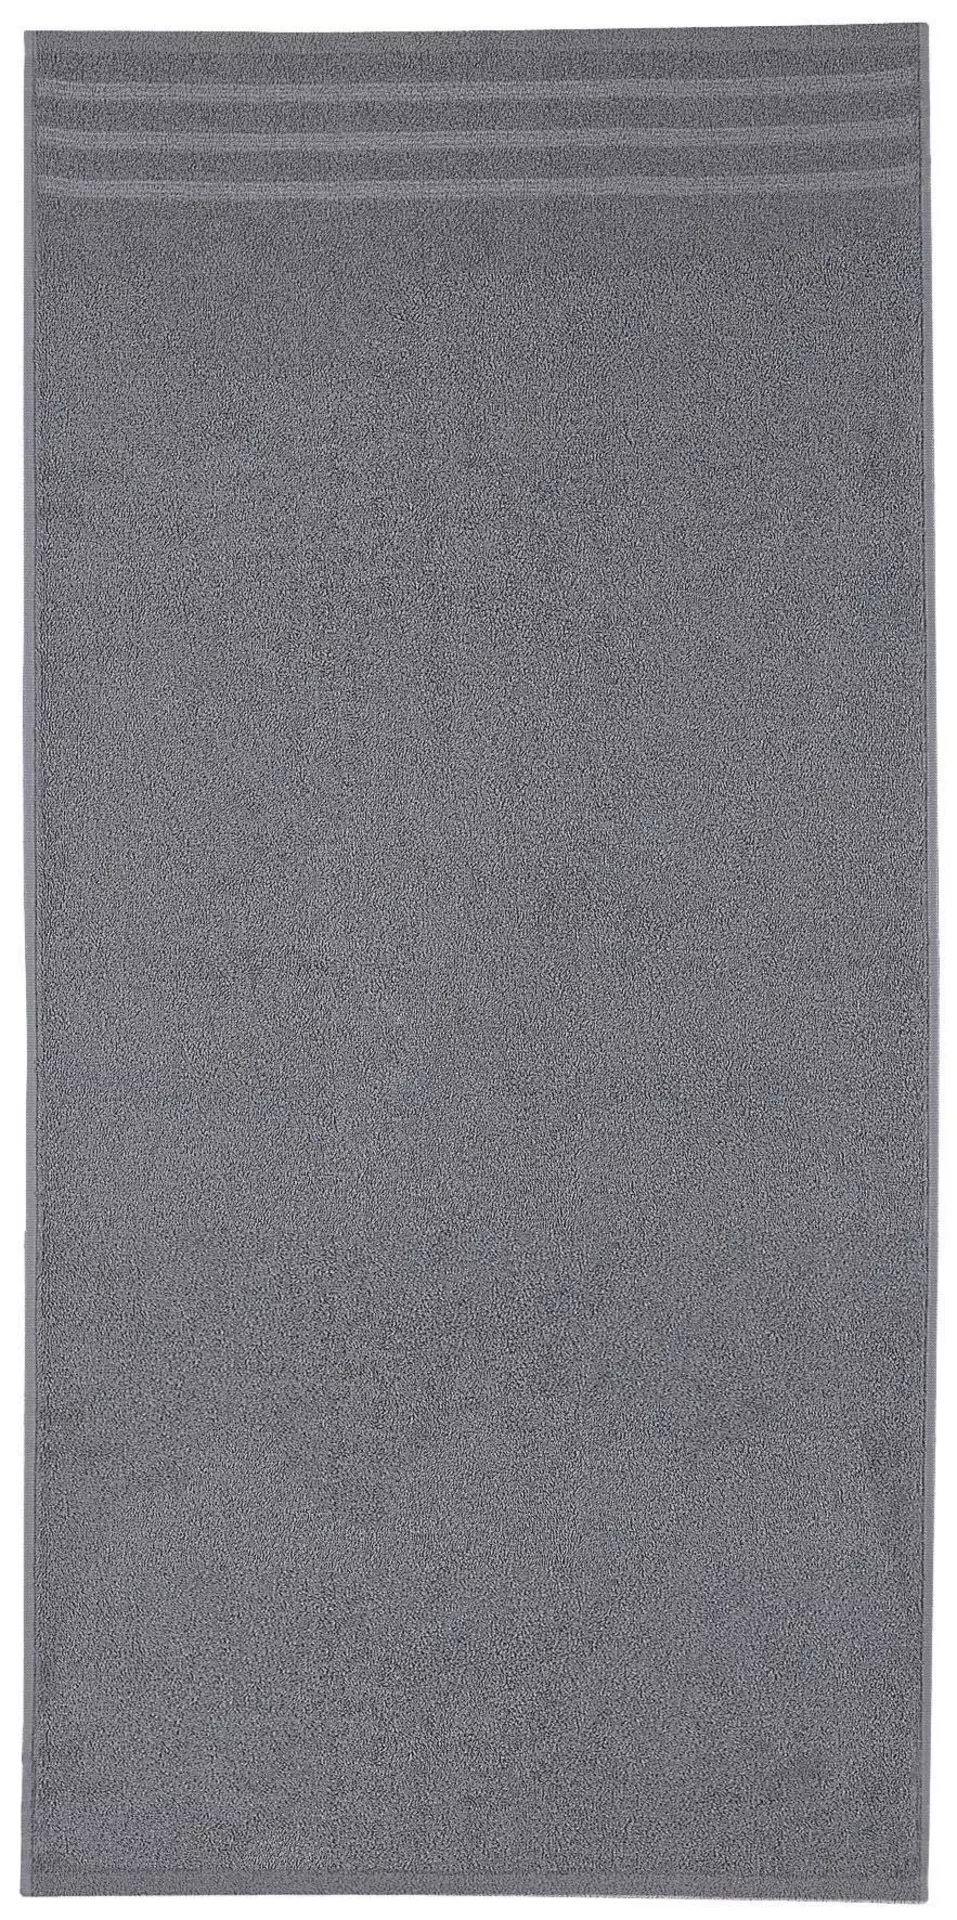 Handtuch Kleine Wolke grau | Möbel Inhofer